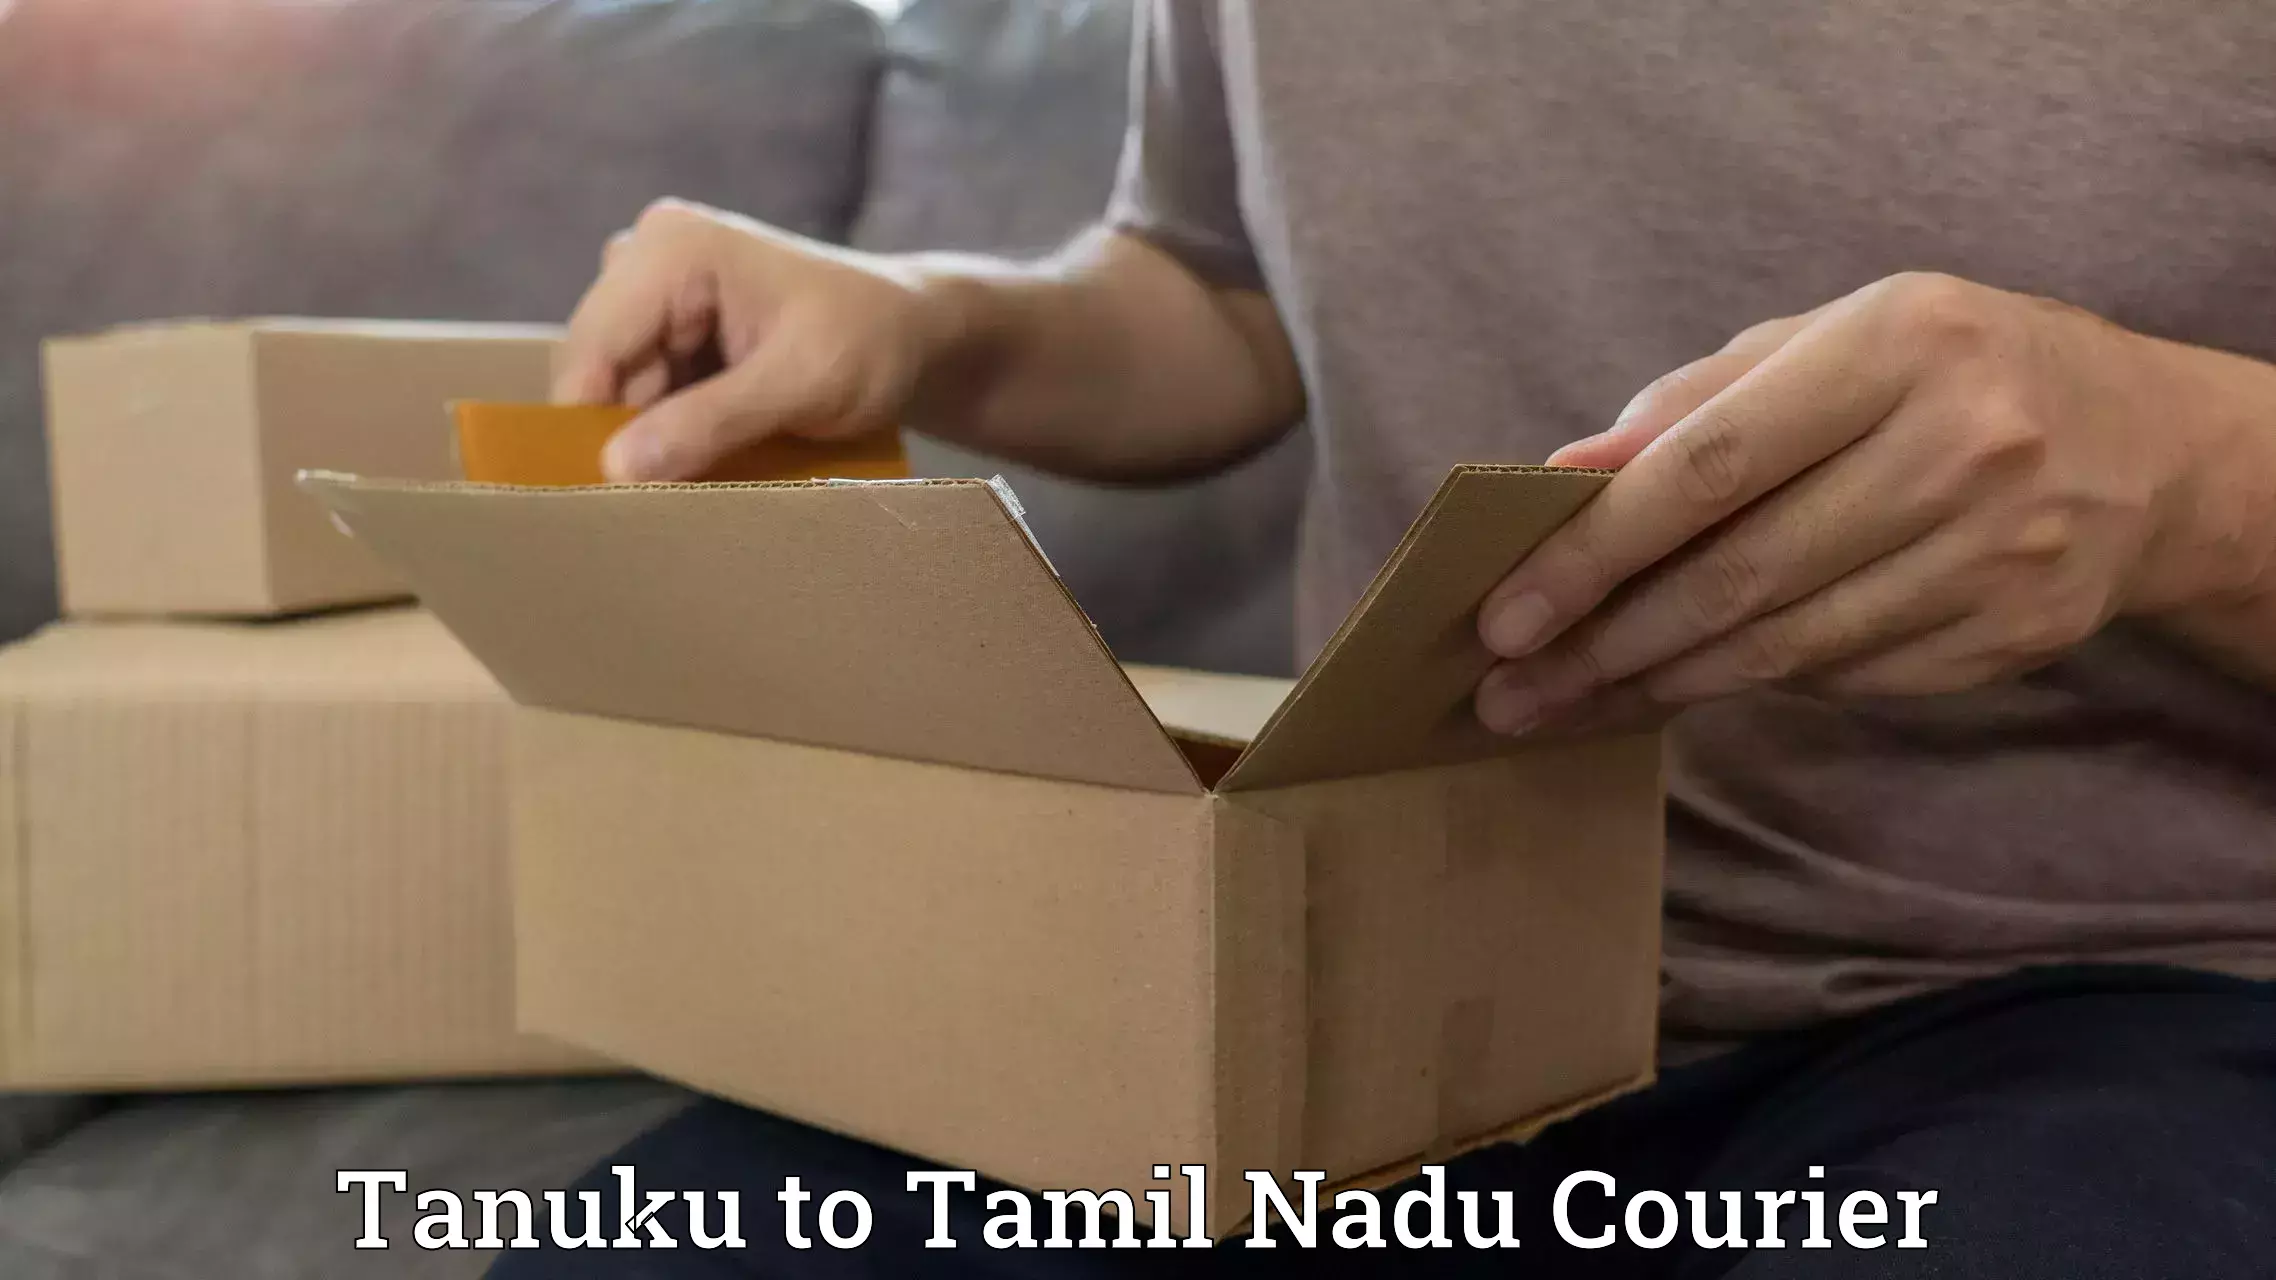 Efficient shipping platforms in Tanuku to Tamil Nadu